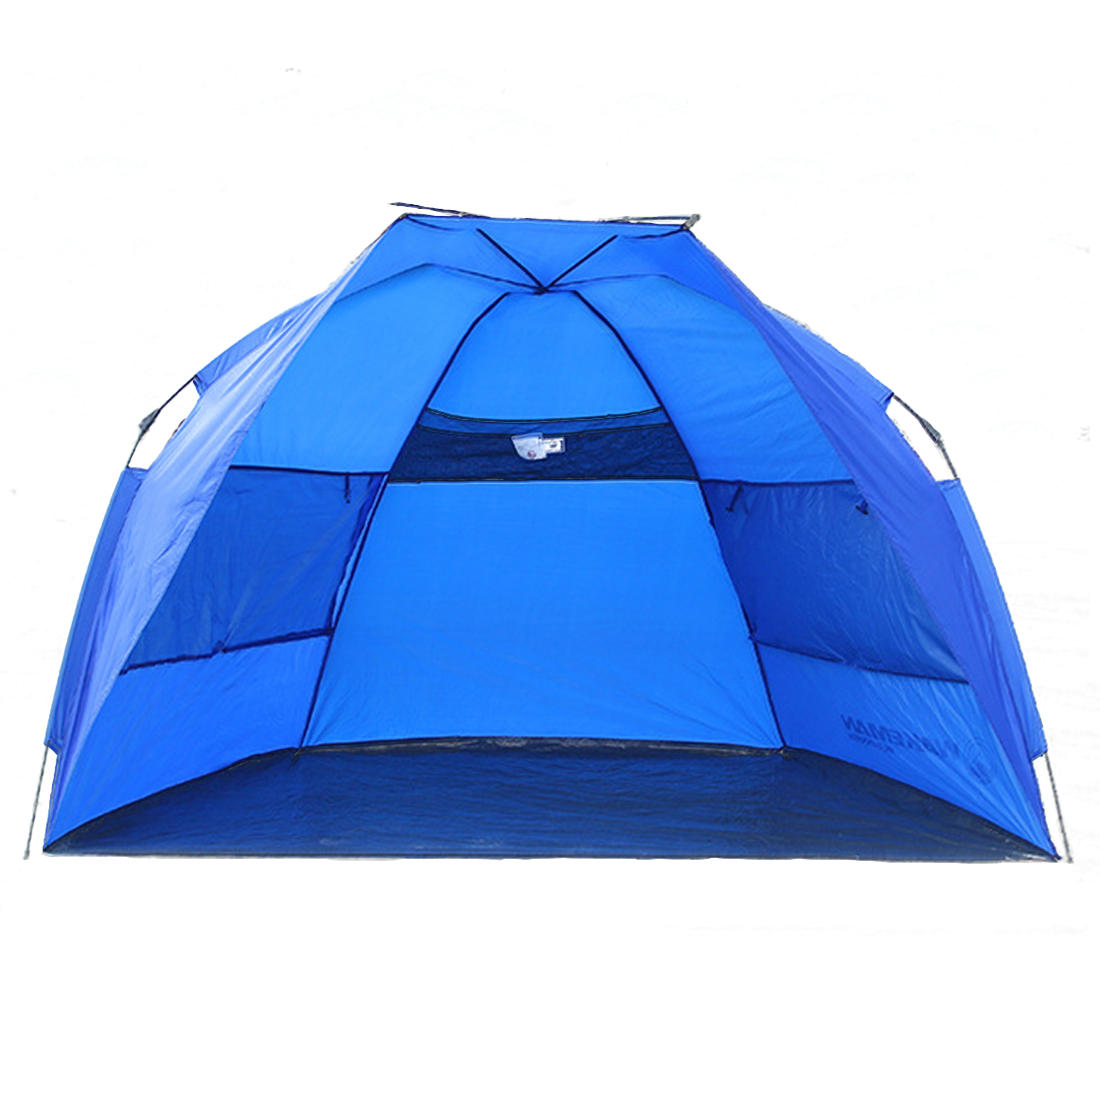 o: Tenda da campeggio per 1-2 persone, impermeabile, automatica, rifugio per il sole sulla spiaggia.